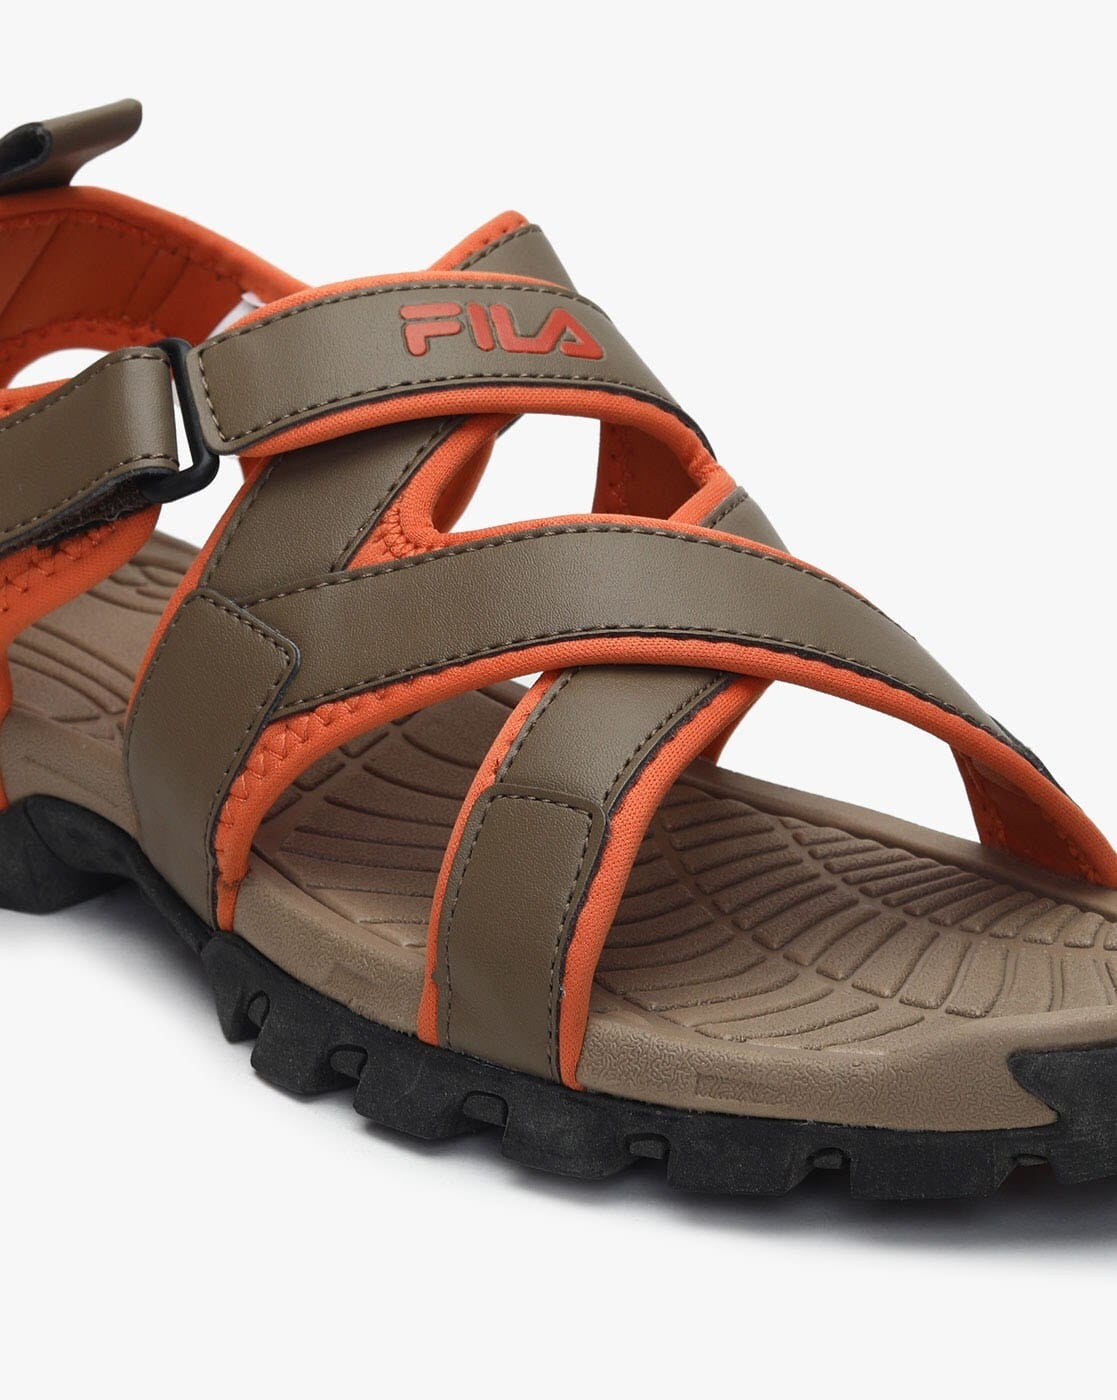 FILA Sleek Slides Athletic Sandals Logo Slippers Black/Red Men's 7 | eBay